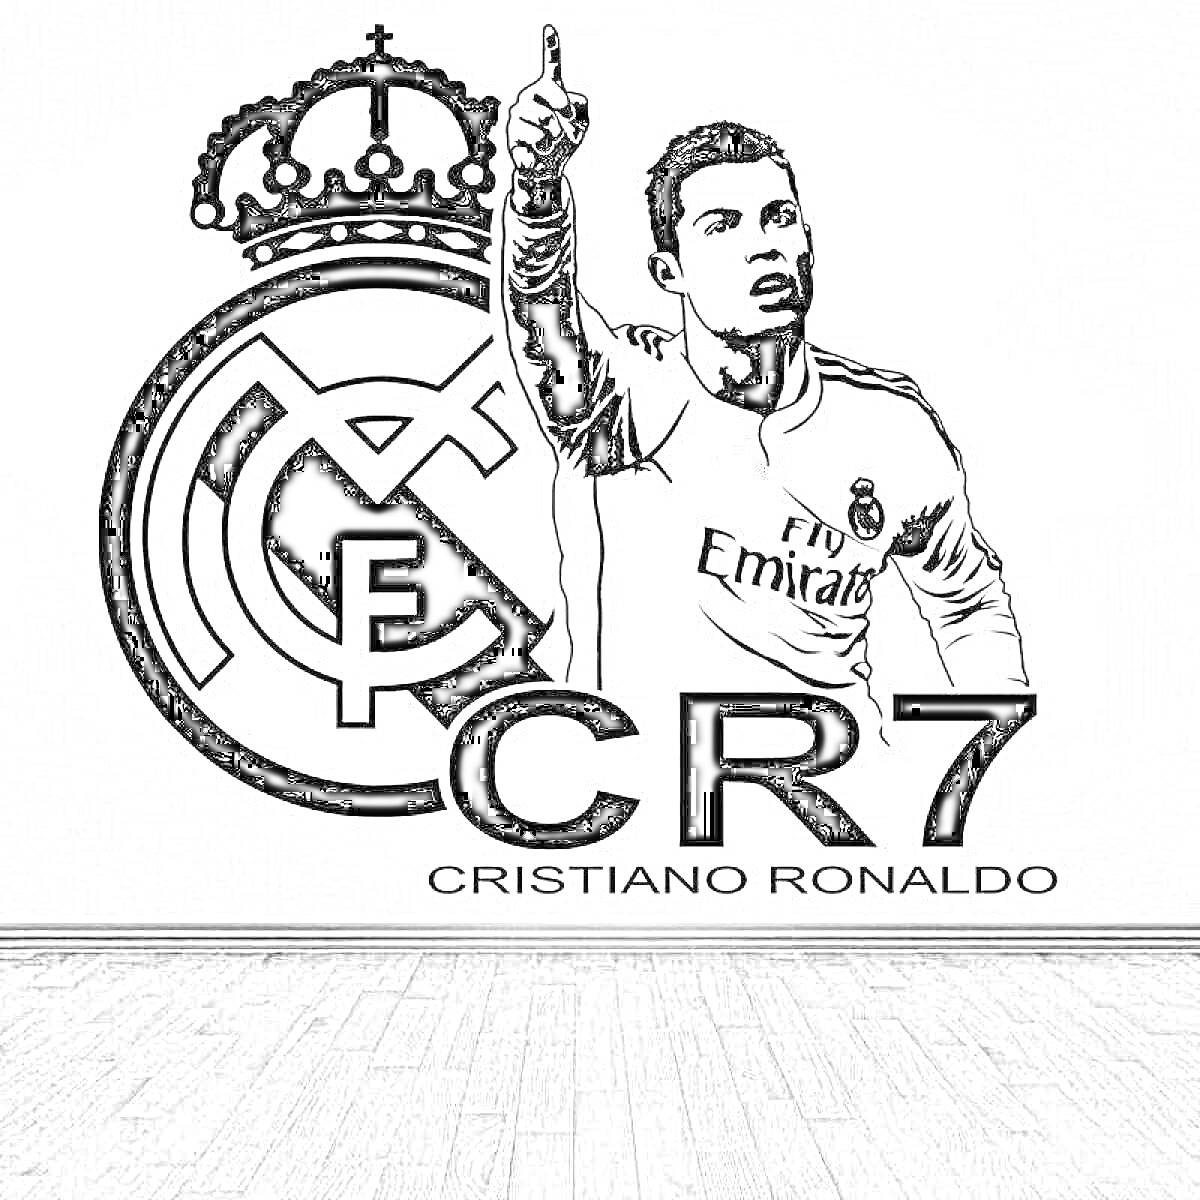 Раскраска Логотип Реал Мадрид, изображение футболиста в форме Реал Мадрид, надпись CR7, надпись Cristiano Ronaldo